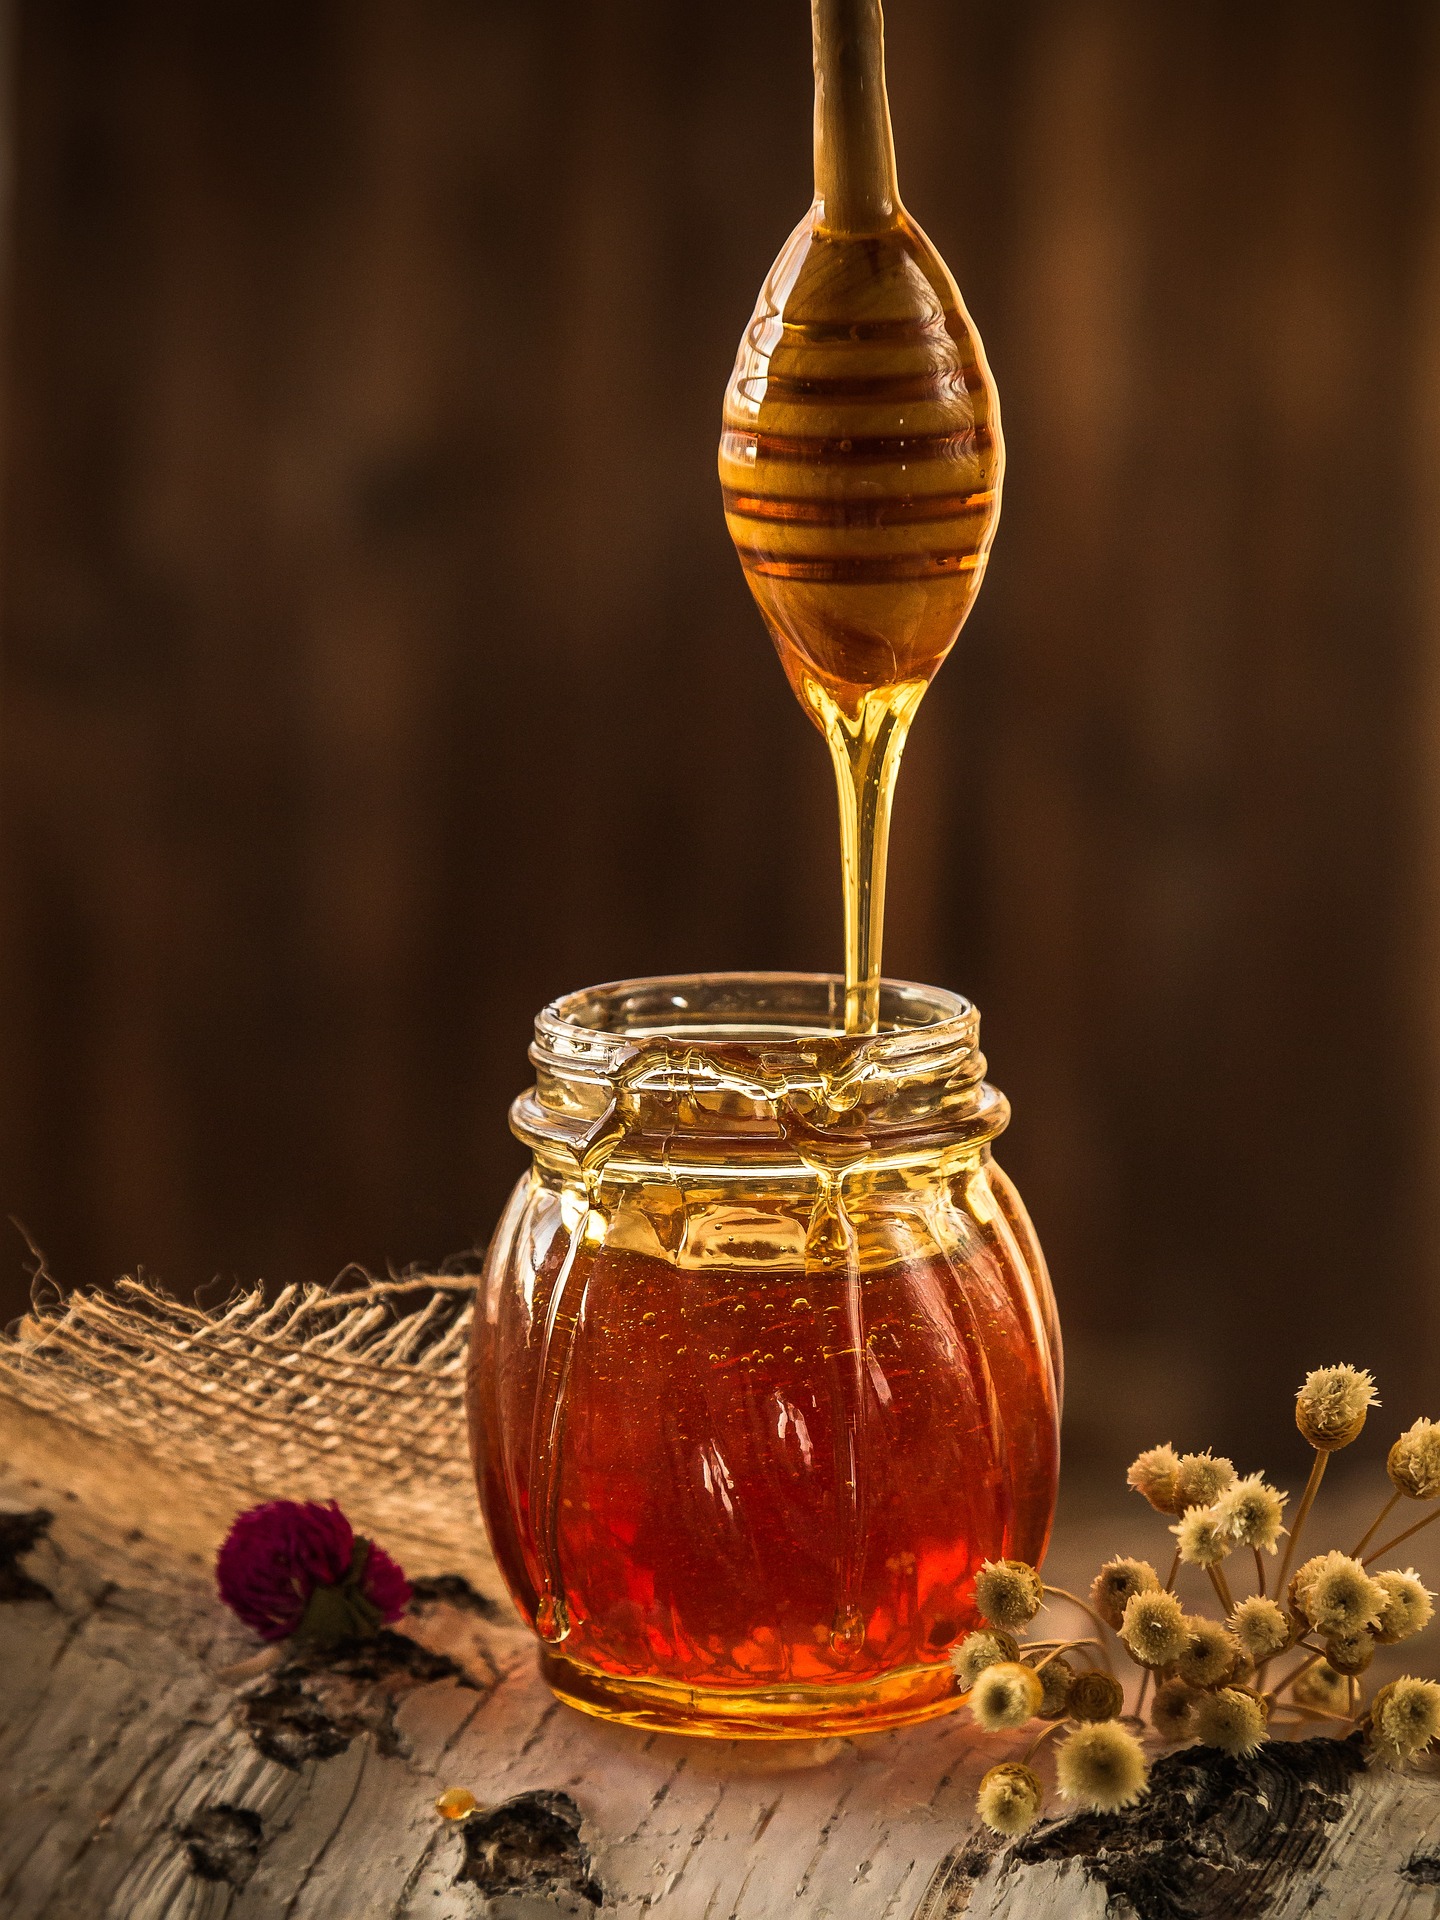 miele ricette facili cosa cucinare con il miele easy recipe